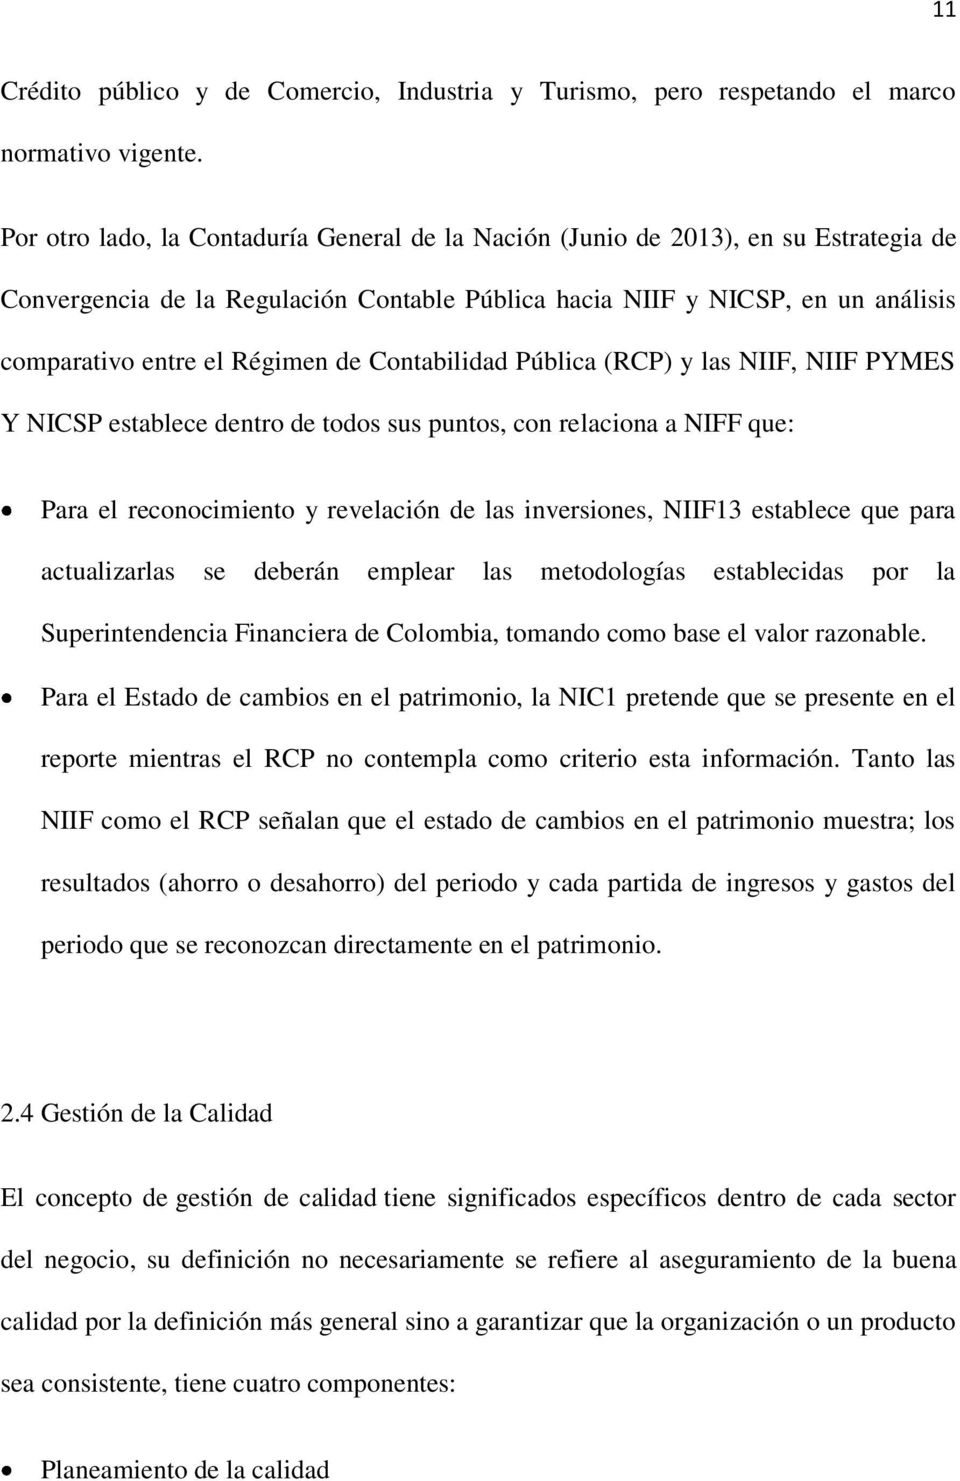 de Contabilidad Pública (RCP) y las NIIF, NIIF PYMES Y NICSP establece dentro de todos sus puntos, con relaciona a NIFF que: Para el reconocimiento y revelación de las inversiones, NIIF13 establece